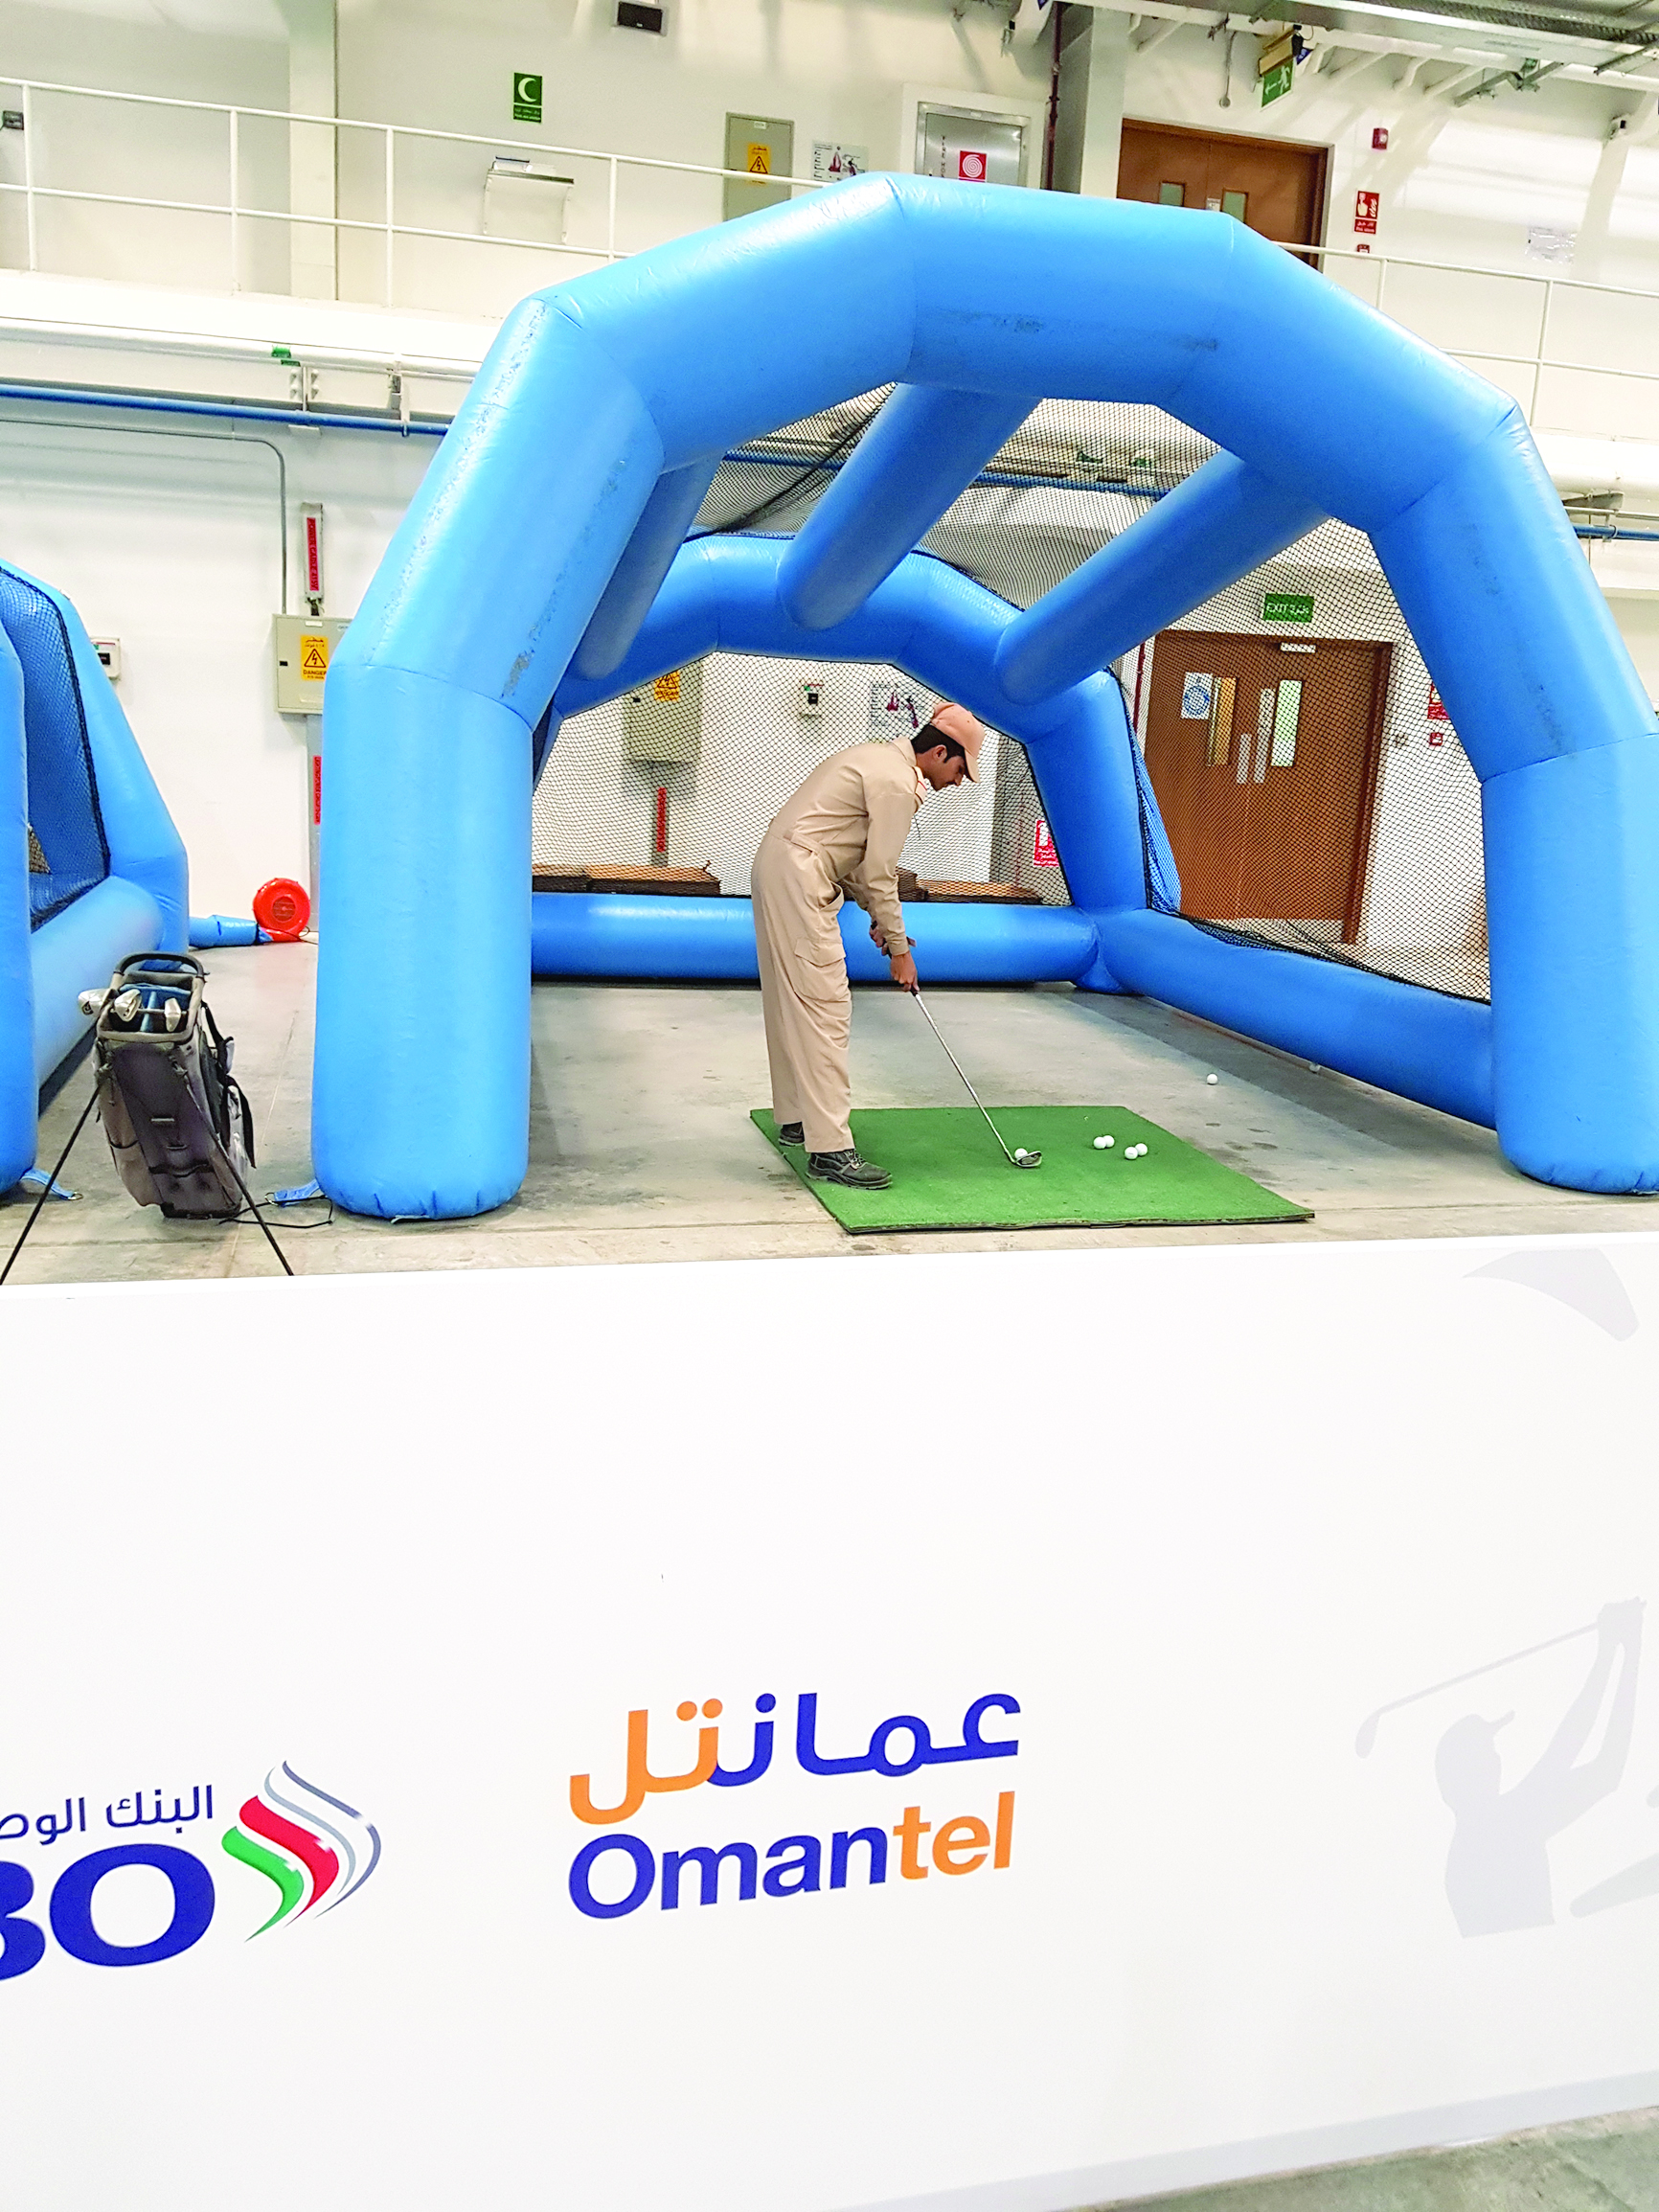 شراكة بين عمانتل وجولف

عُمان لتعزيز الرياضـة